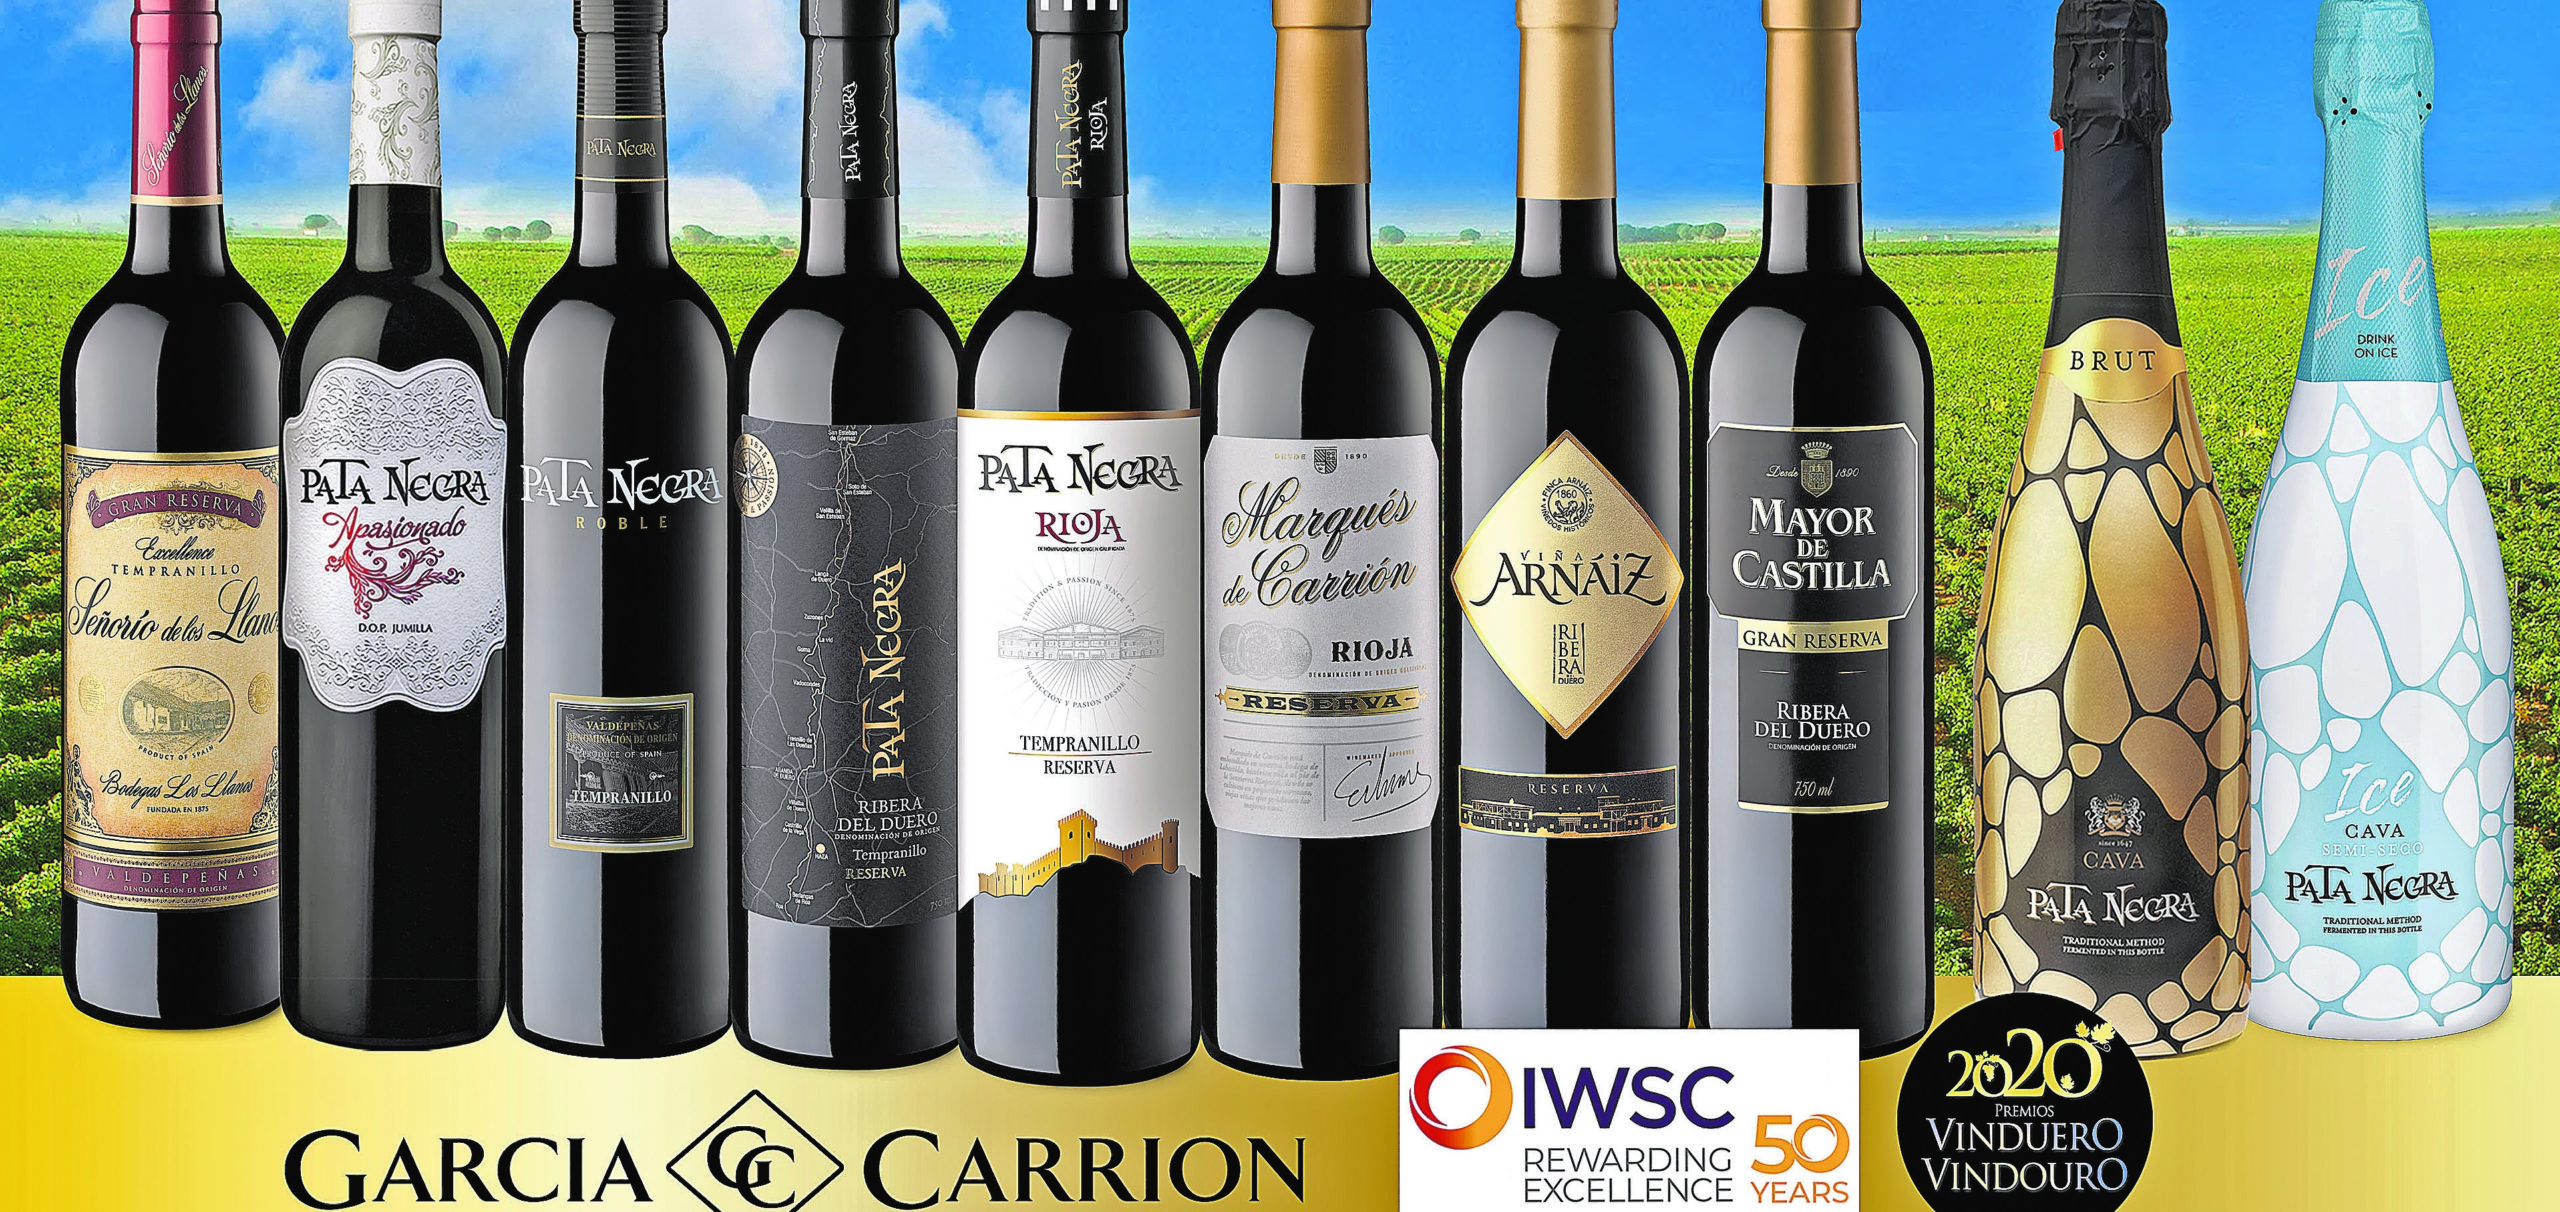 Los vinos y cavas de García Carrión logran más de 200 medallas en 2020